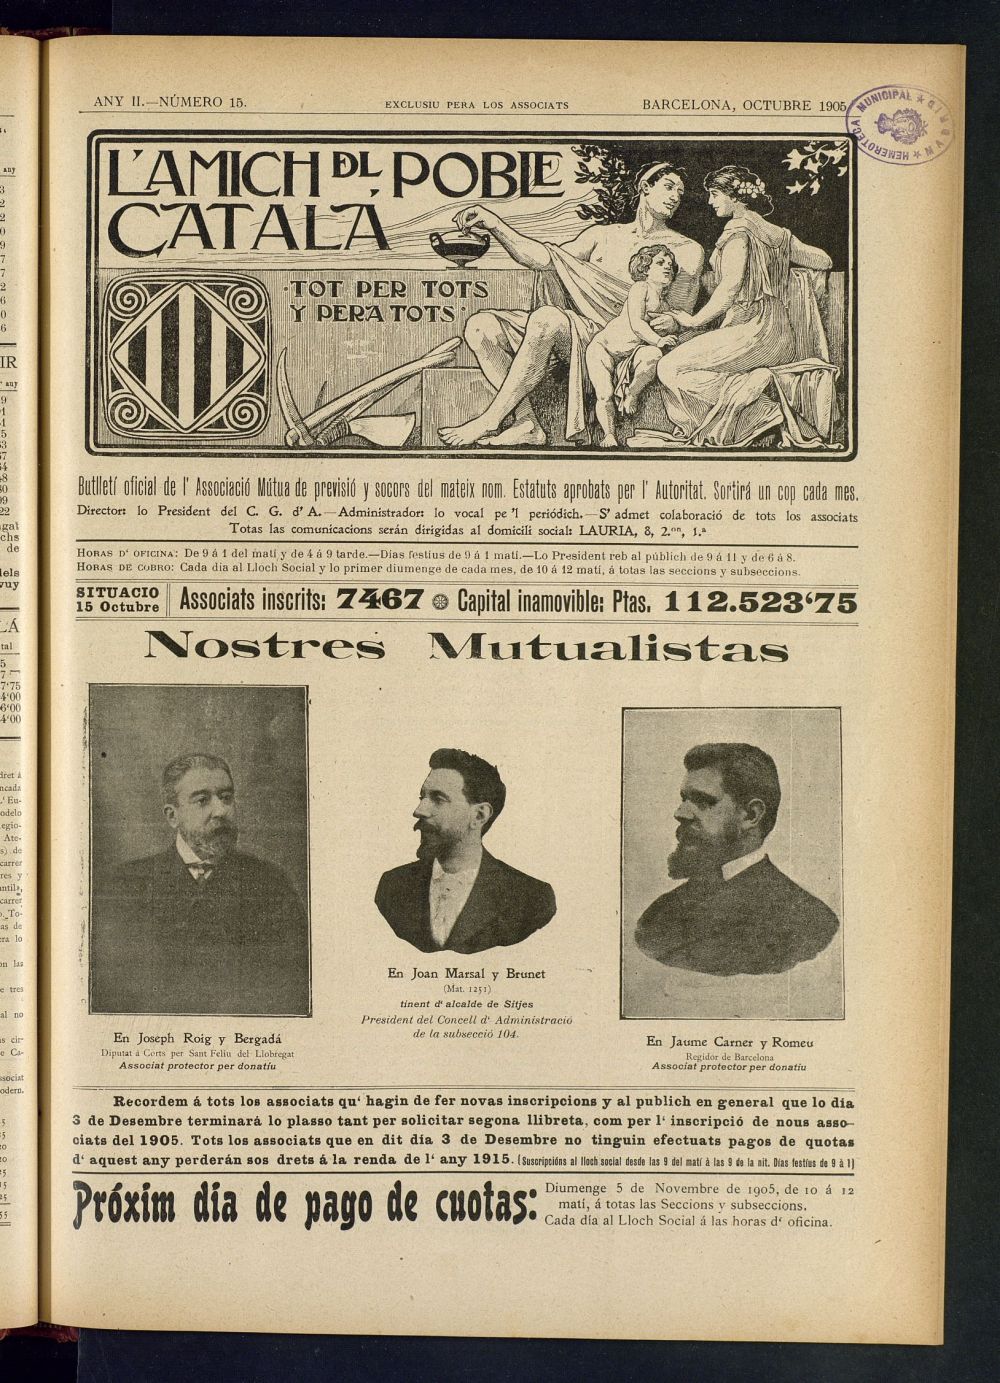 Lamich del poble catal: butllet oficial de lassociacio, ques publicara una volta cada mes de octubre de 1905